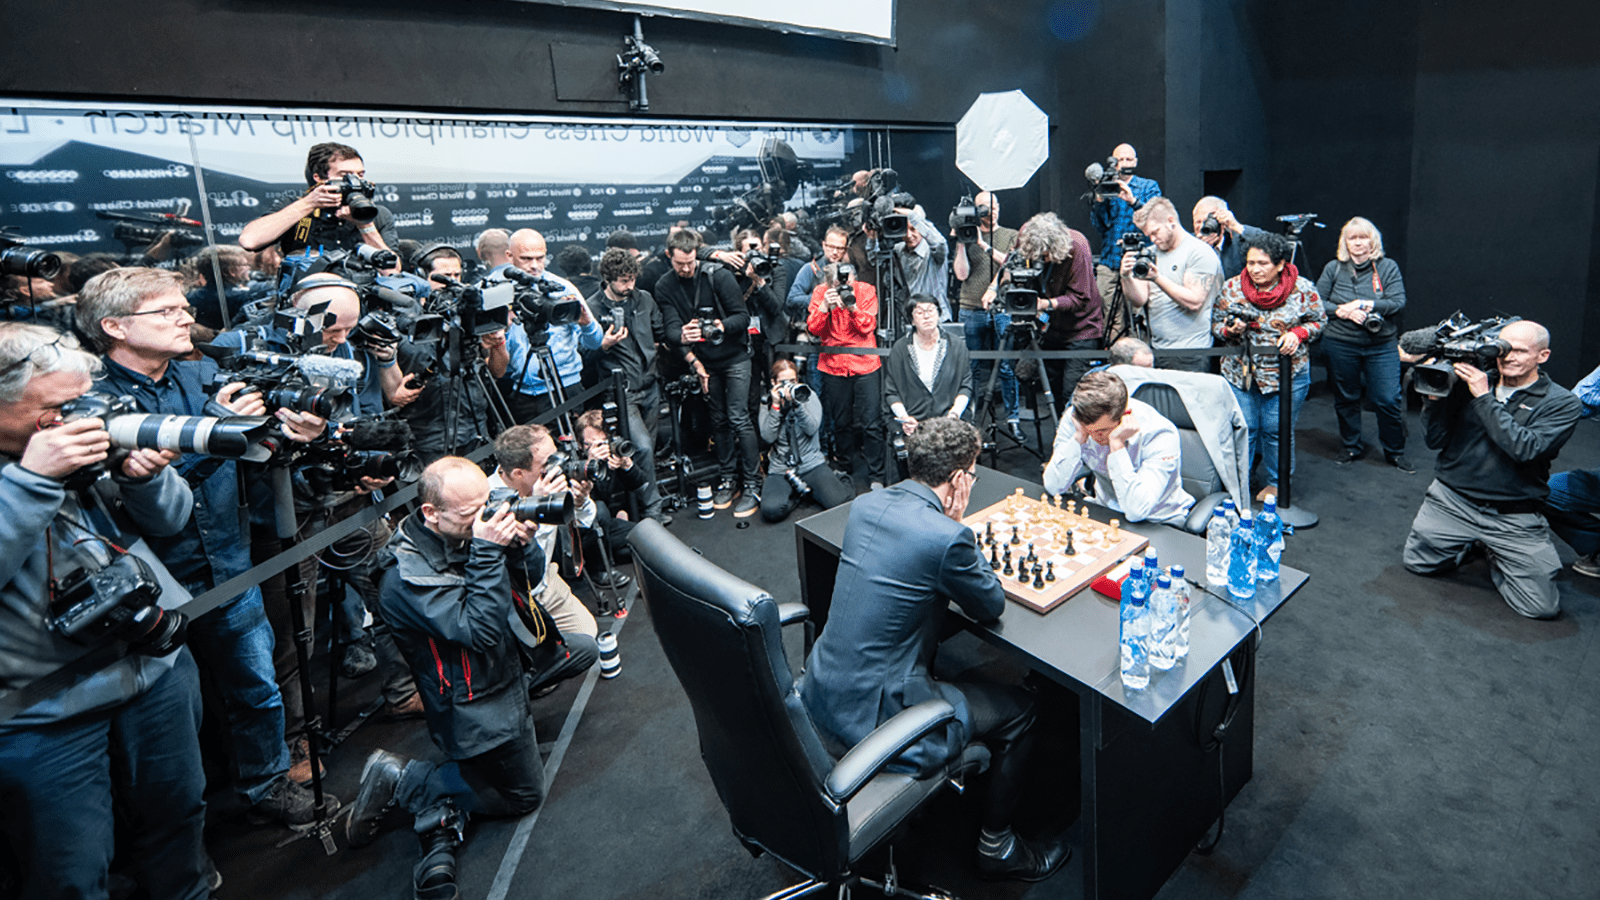 O Campeonato Mundial de Xadrez da FIDE será realizado na Exposição